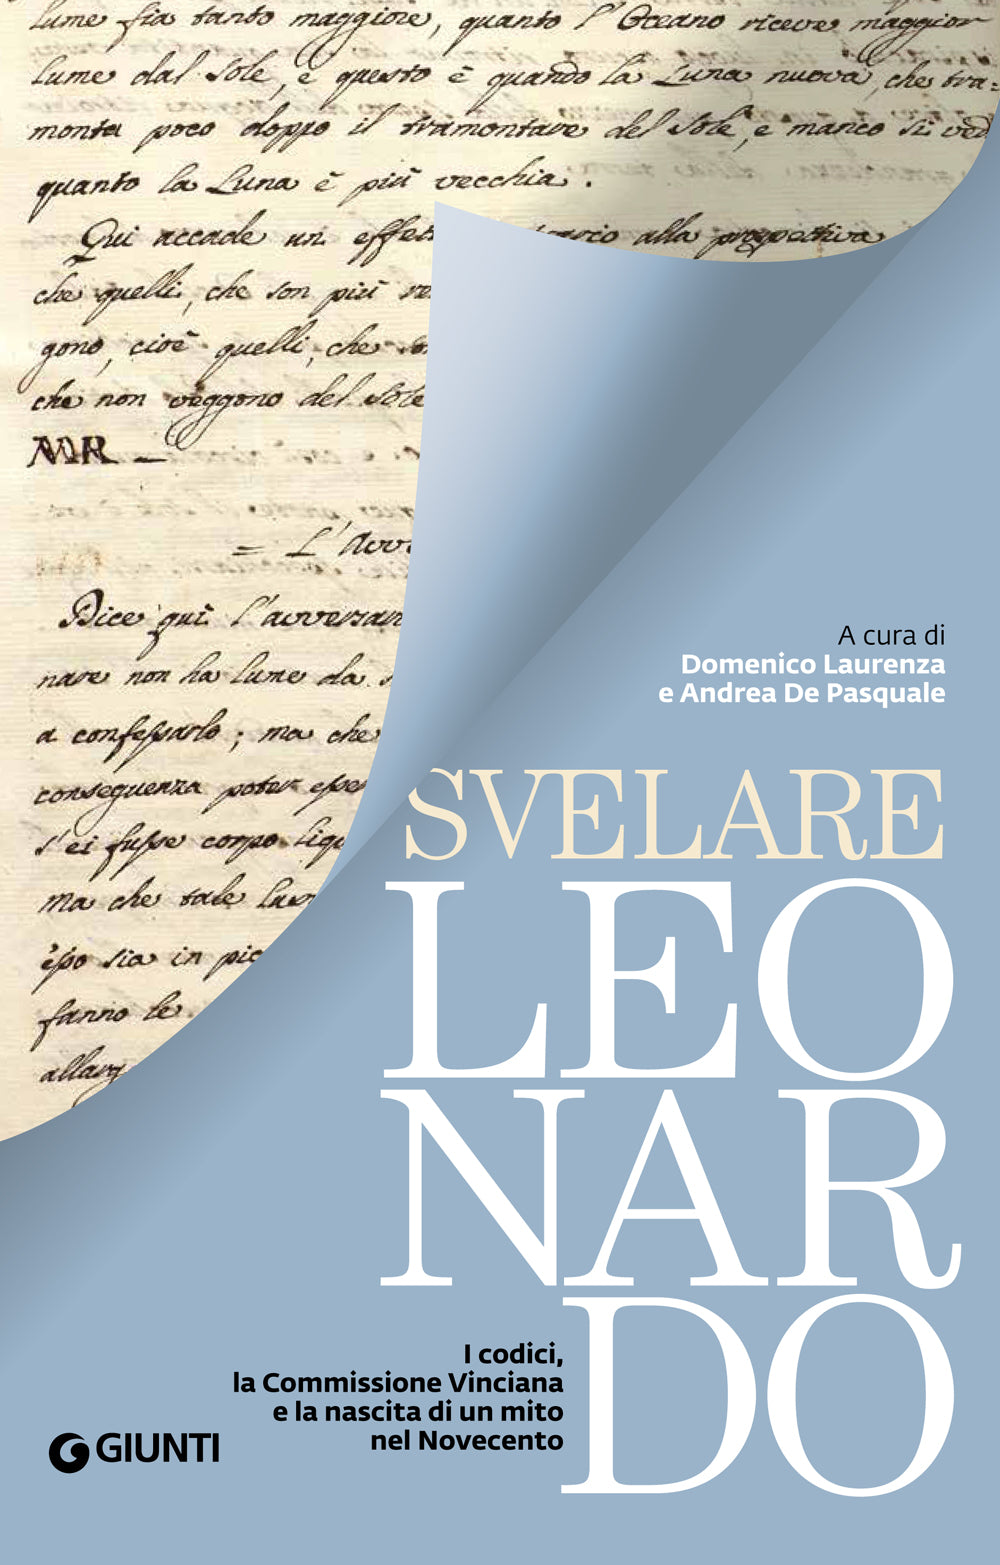 Svelare Leonardo::I codici, la Commissione Vinciana e la nascita di un mito nel Novecento